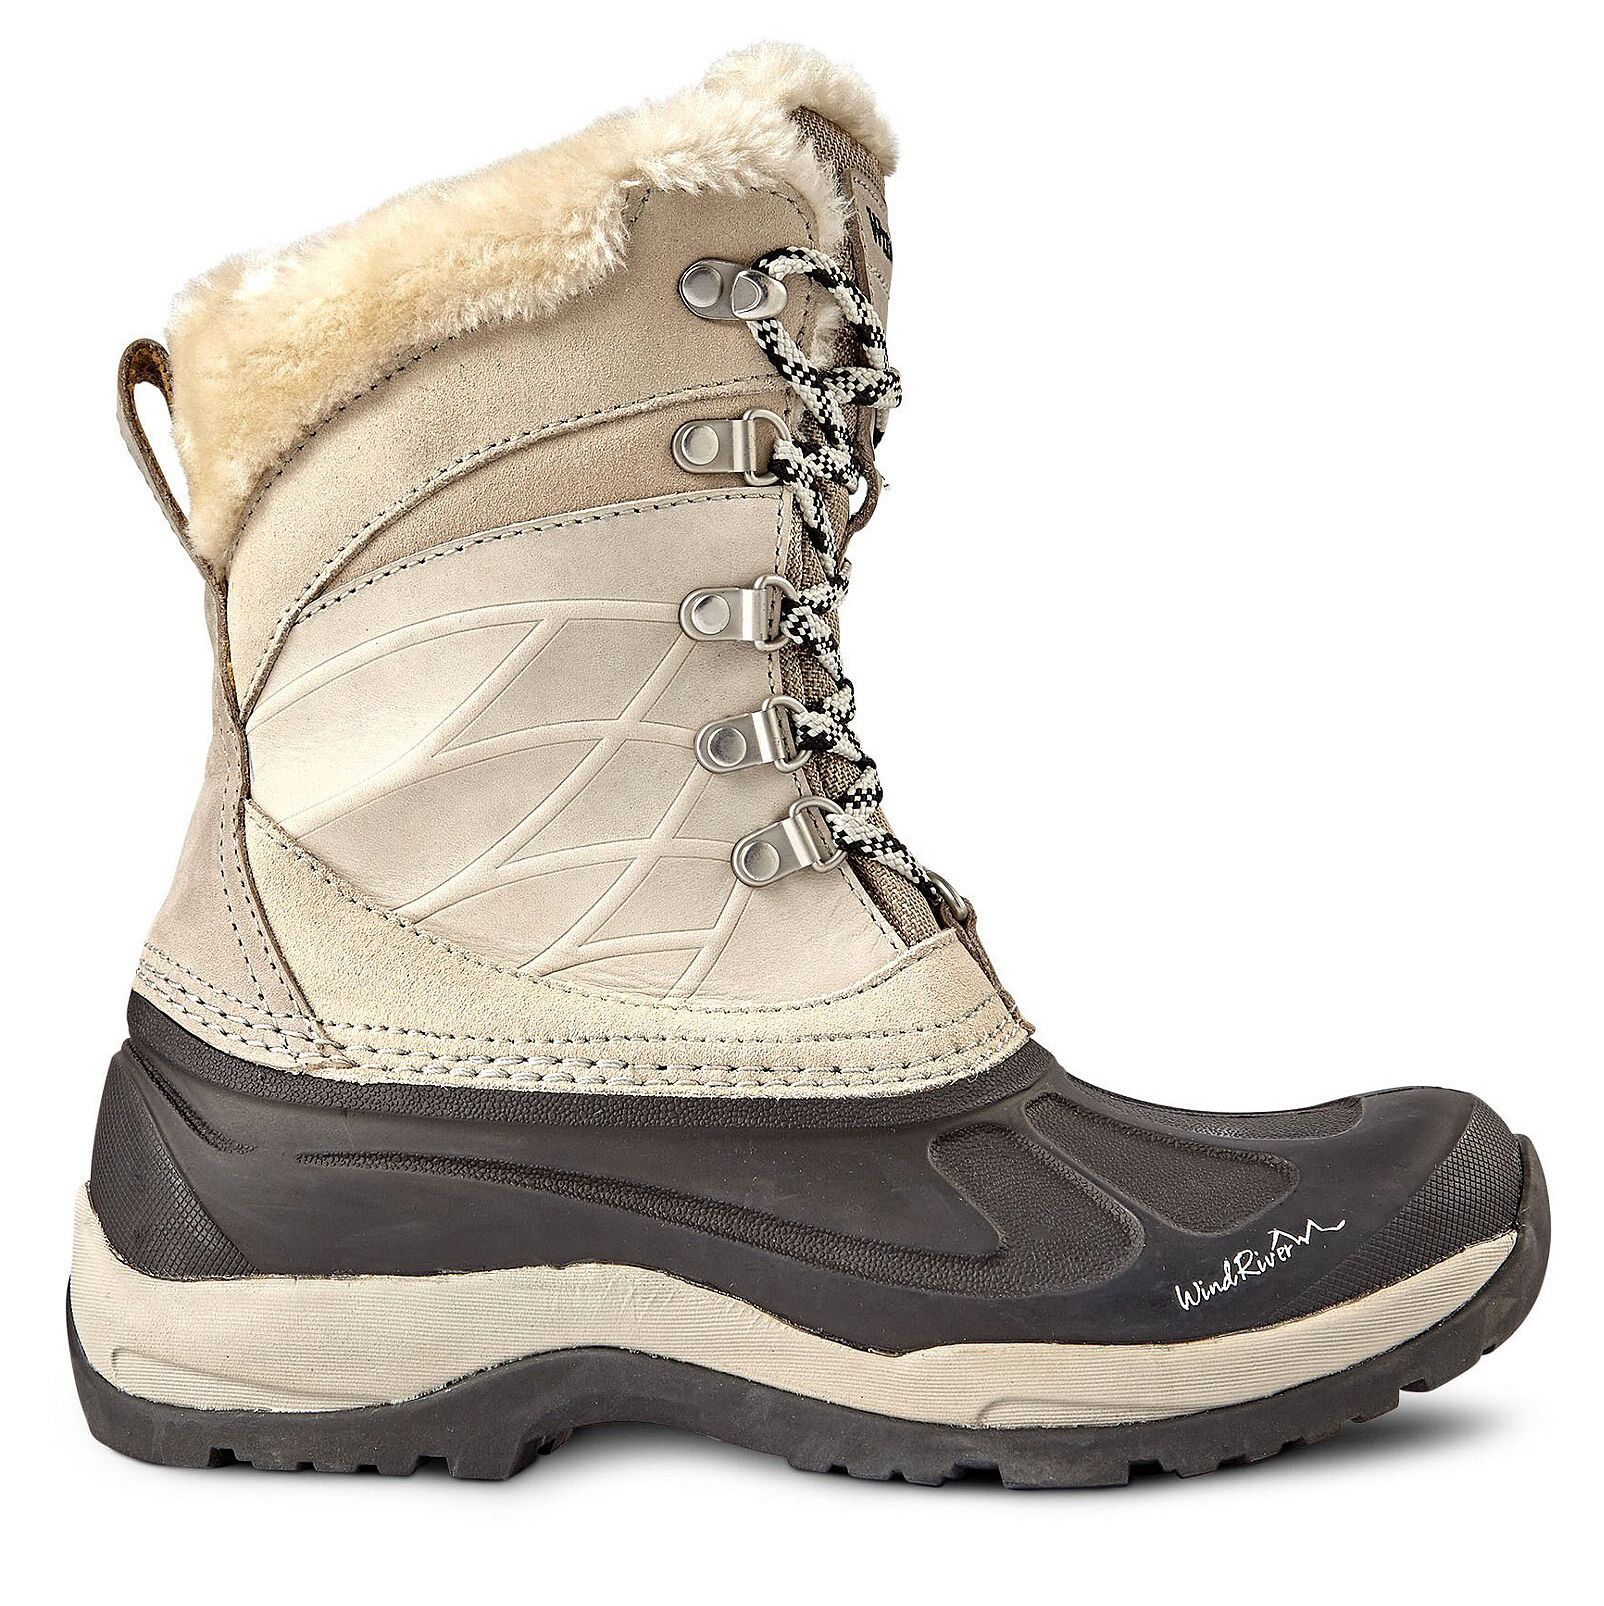 Las mejores botas de nieve y hielo para mujer: botas de invierno Fernie de Windriver para mujer